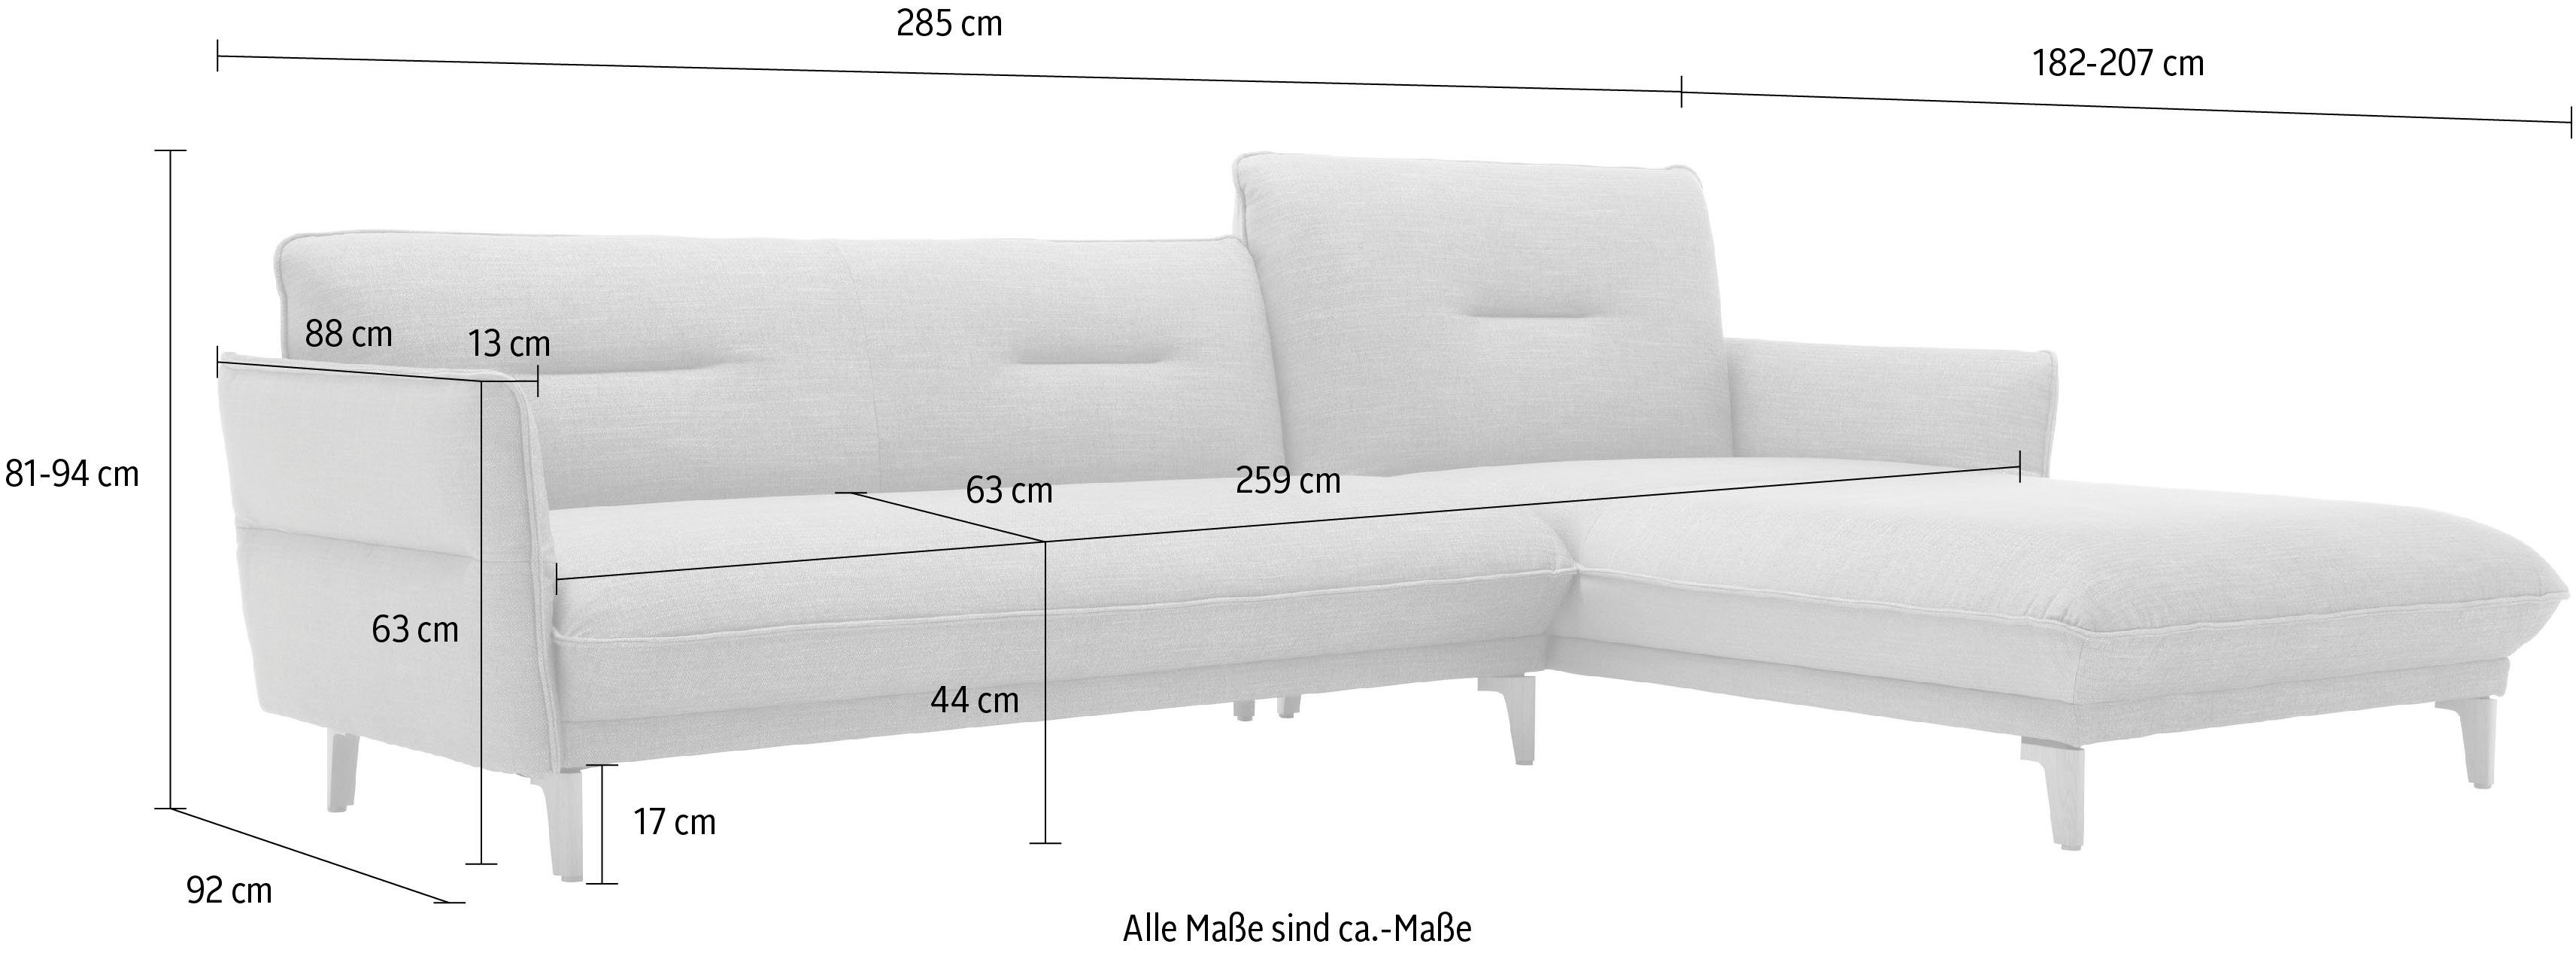 hülsta sofa Ecksofa Neigefunktion, 068-58 mit cm hs.430, Breite 285 schwarz-grau Recamiere hoher Rücken